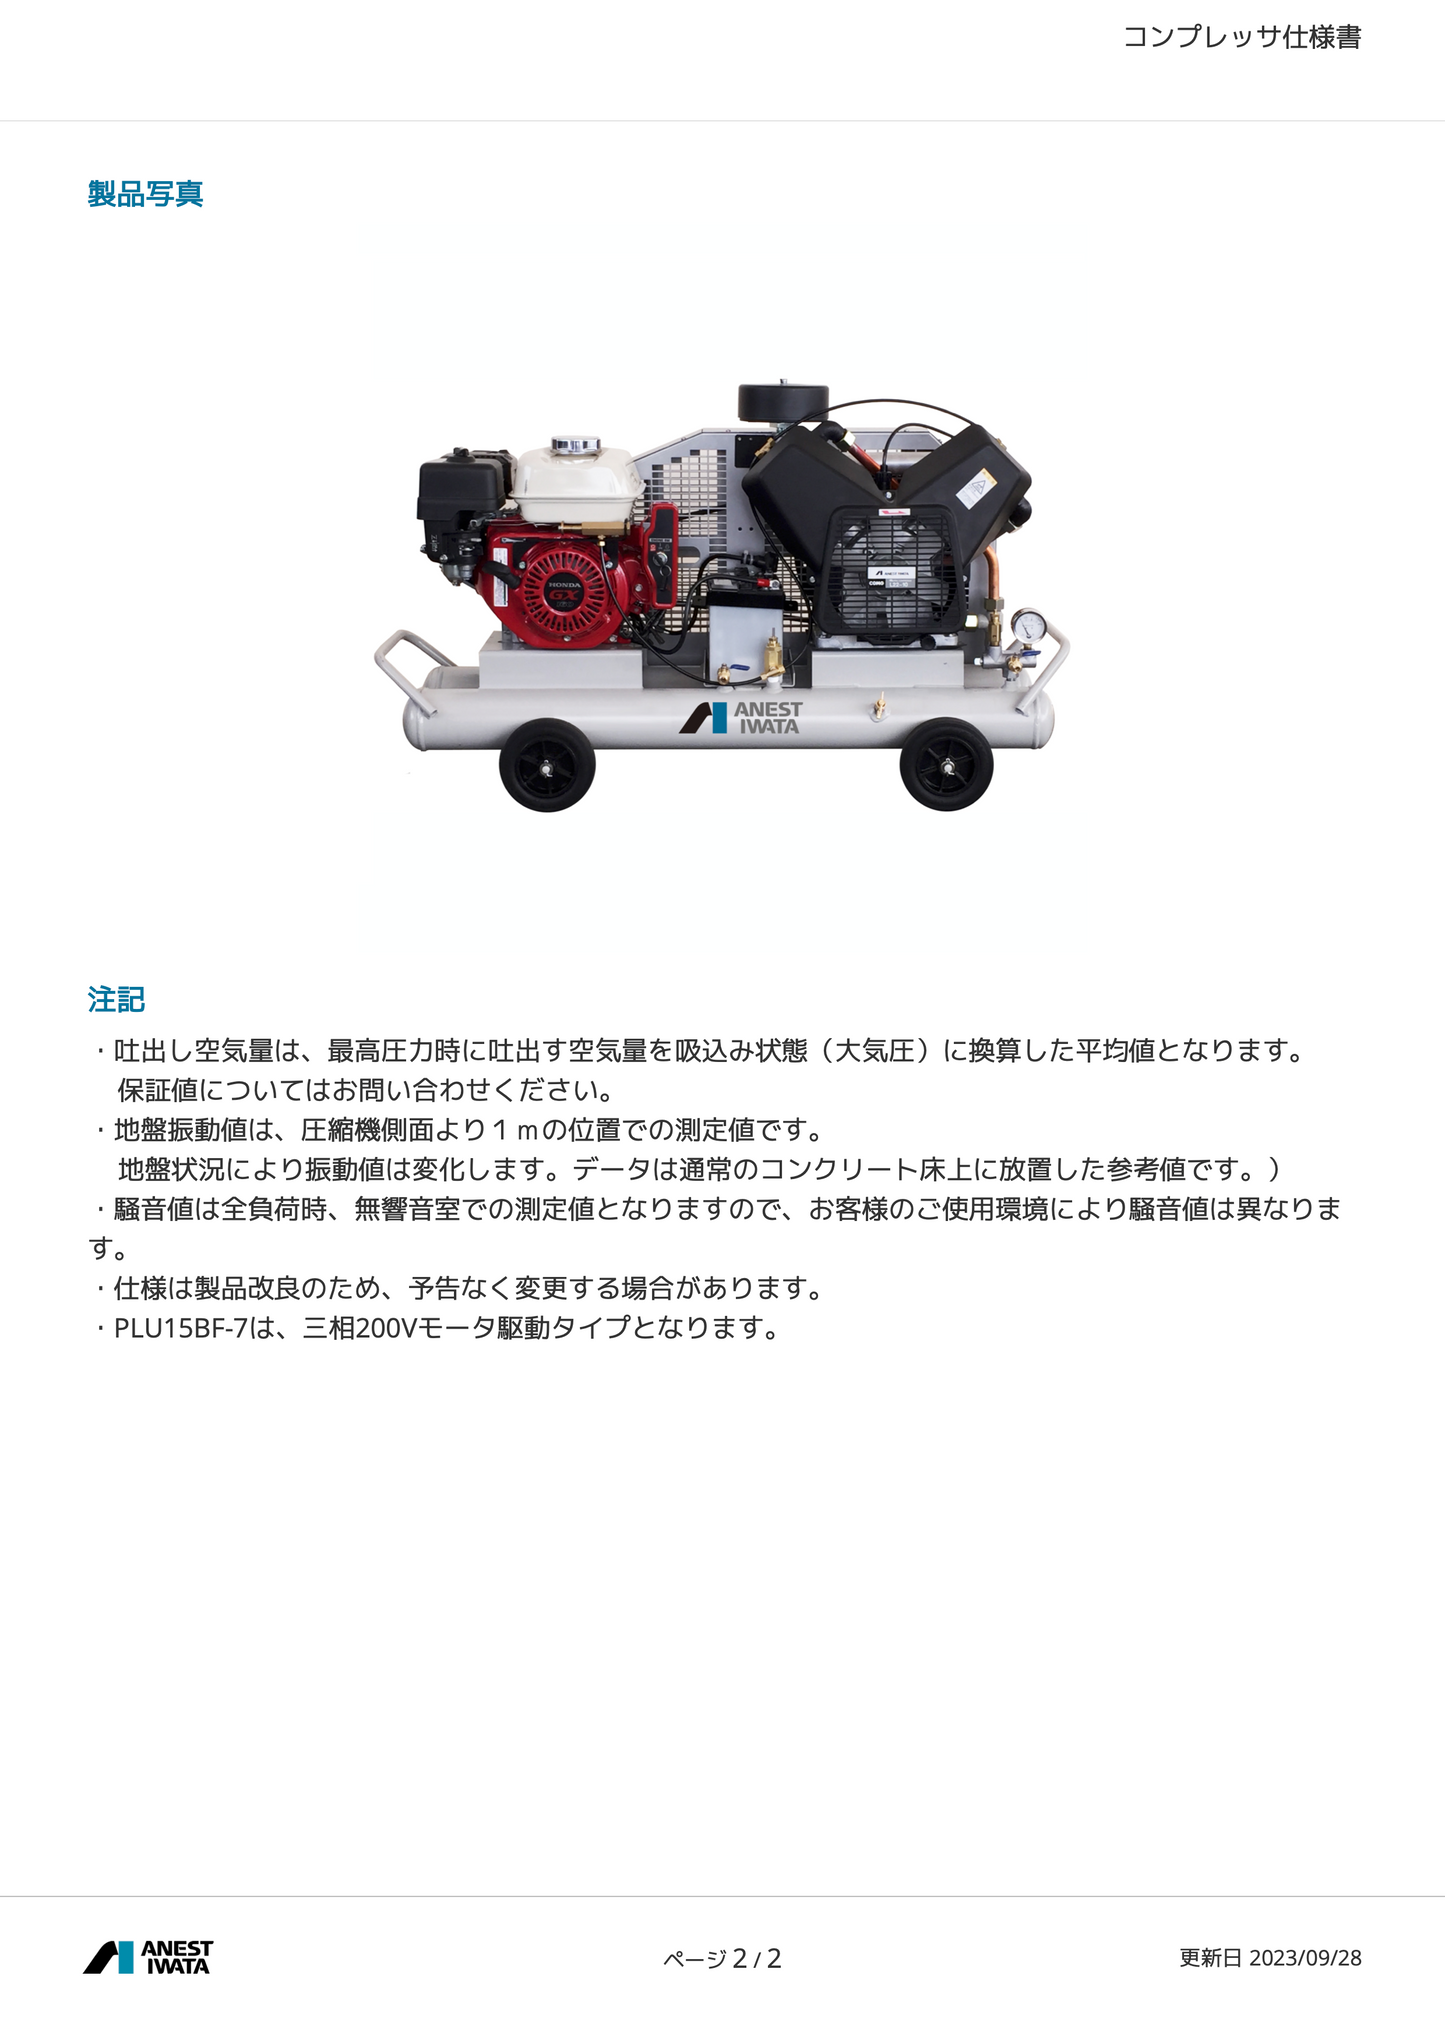 エアーコンプレッサー 3馬力 アネスト岩田 PLUE22CB-10S セル付き レシプロ アンローダー 給油式 ガソリンエンジン